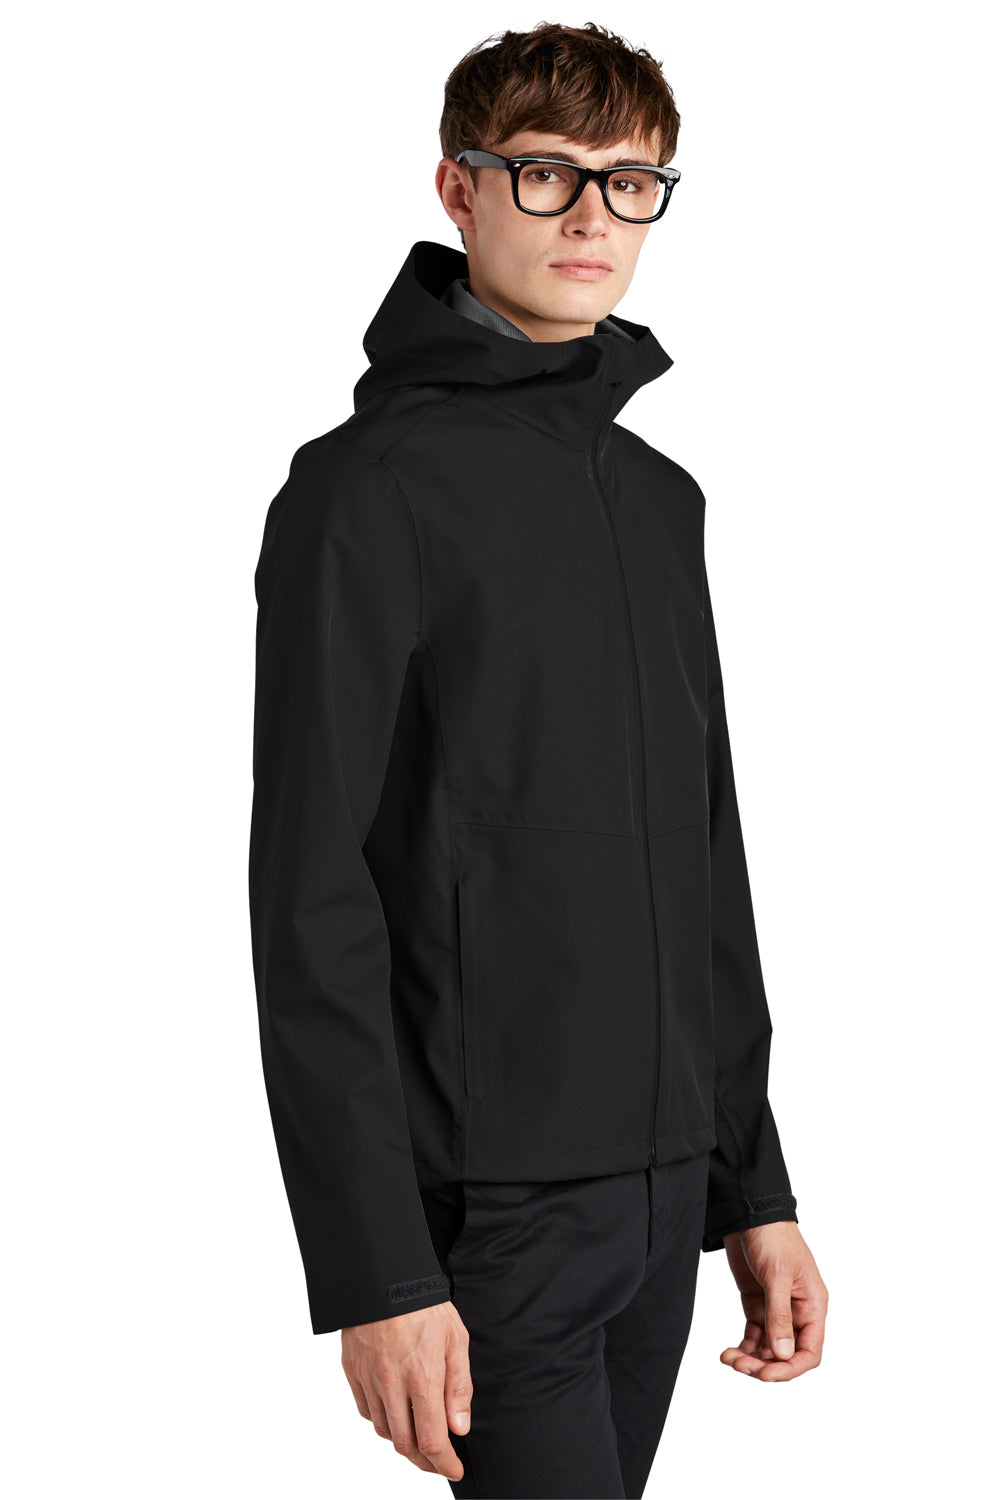 Mercer+Mettle MM7000 Waterproof Full Zip Hooded Rain Jacket Deep Black 3Q